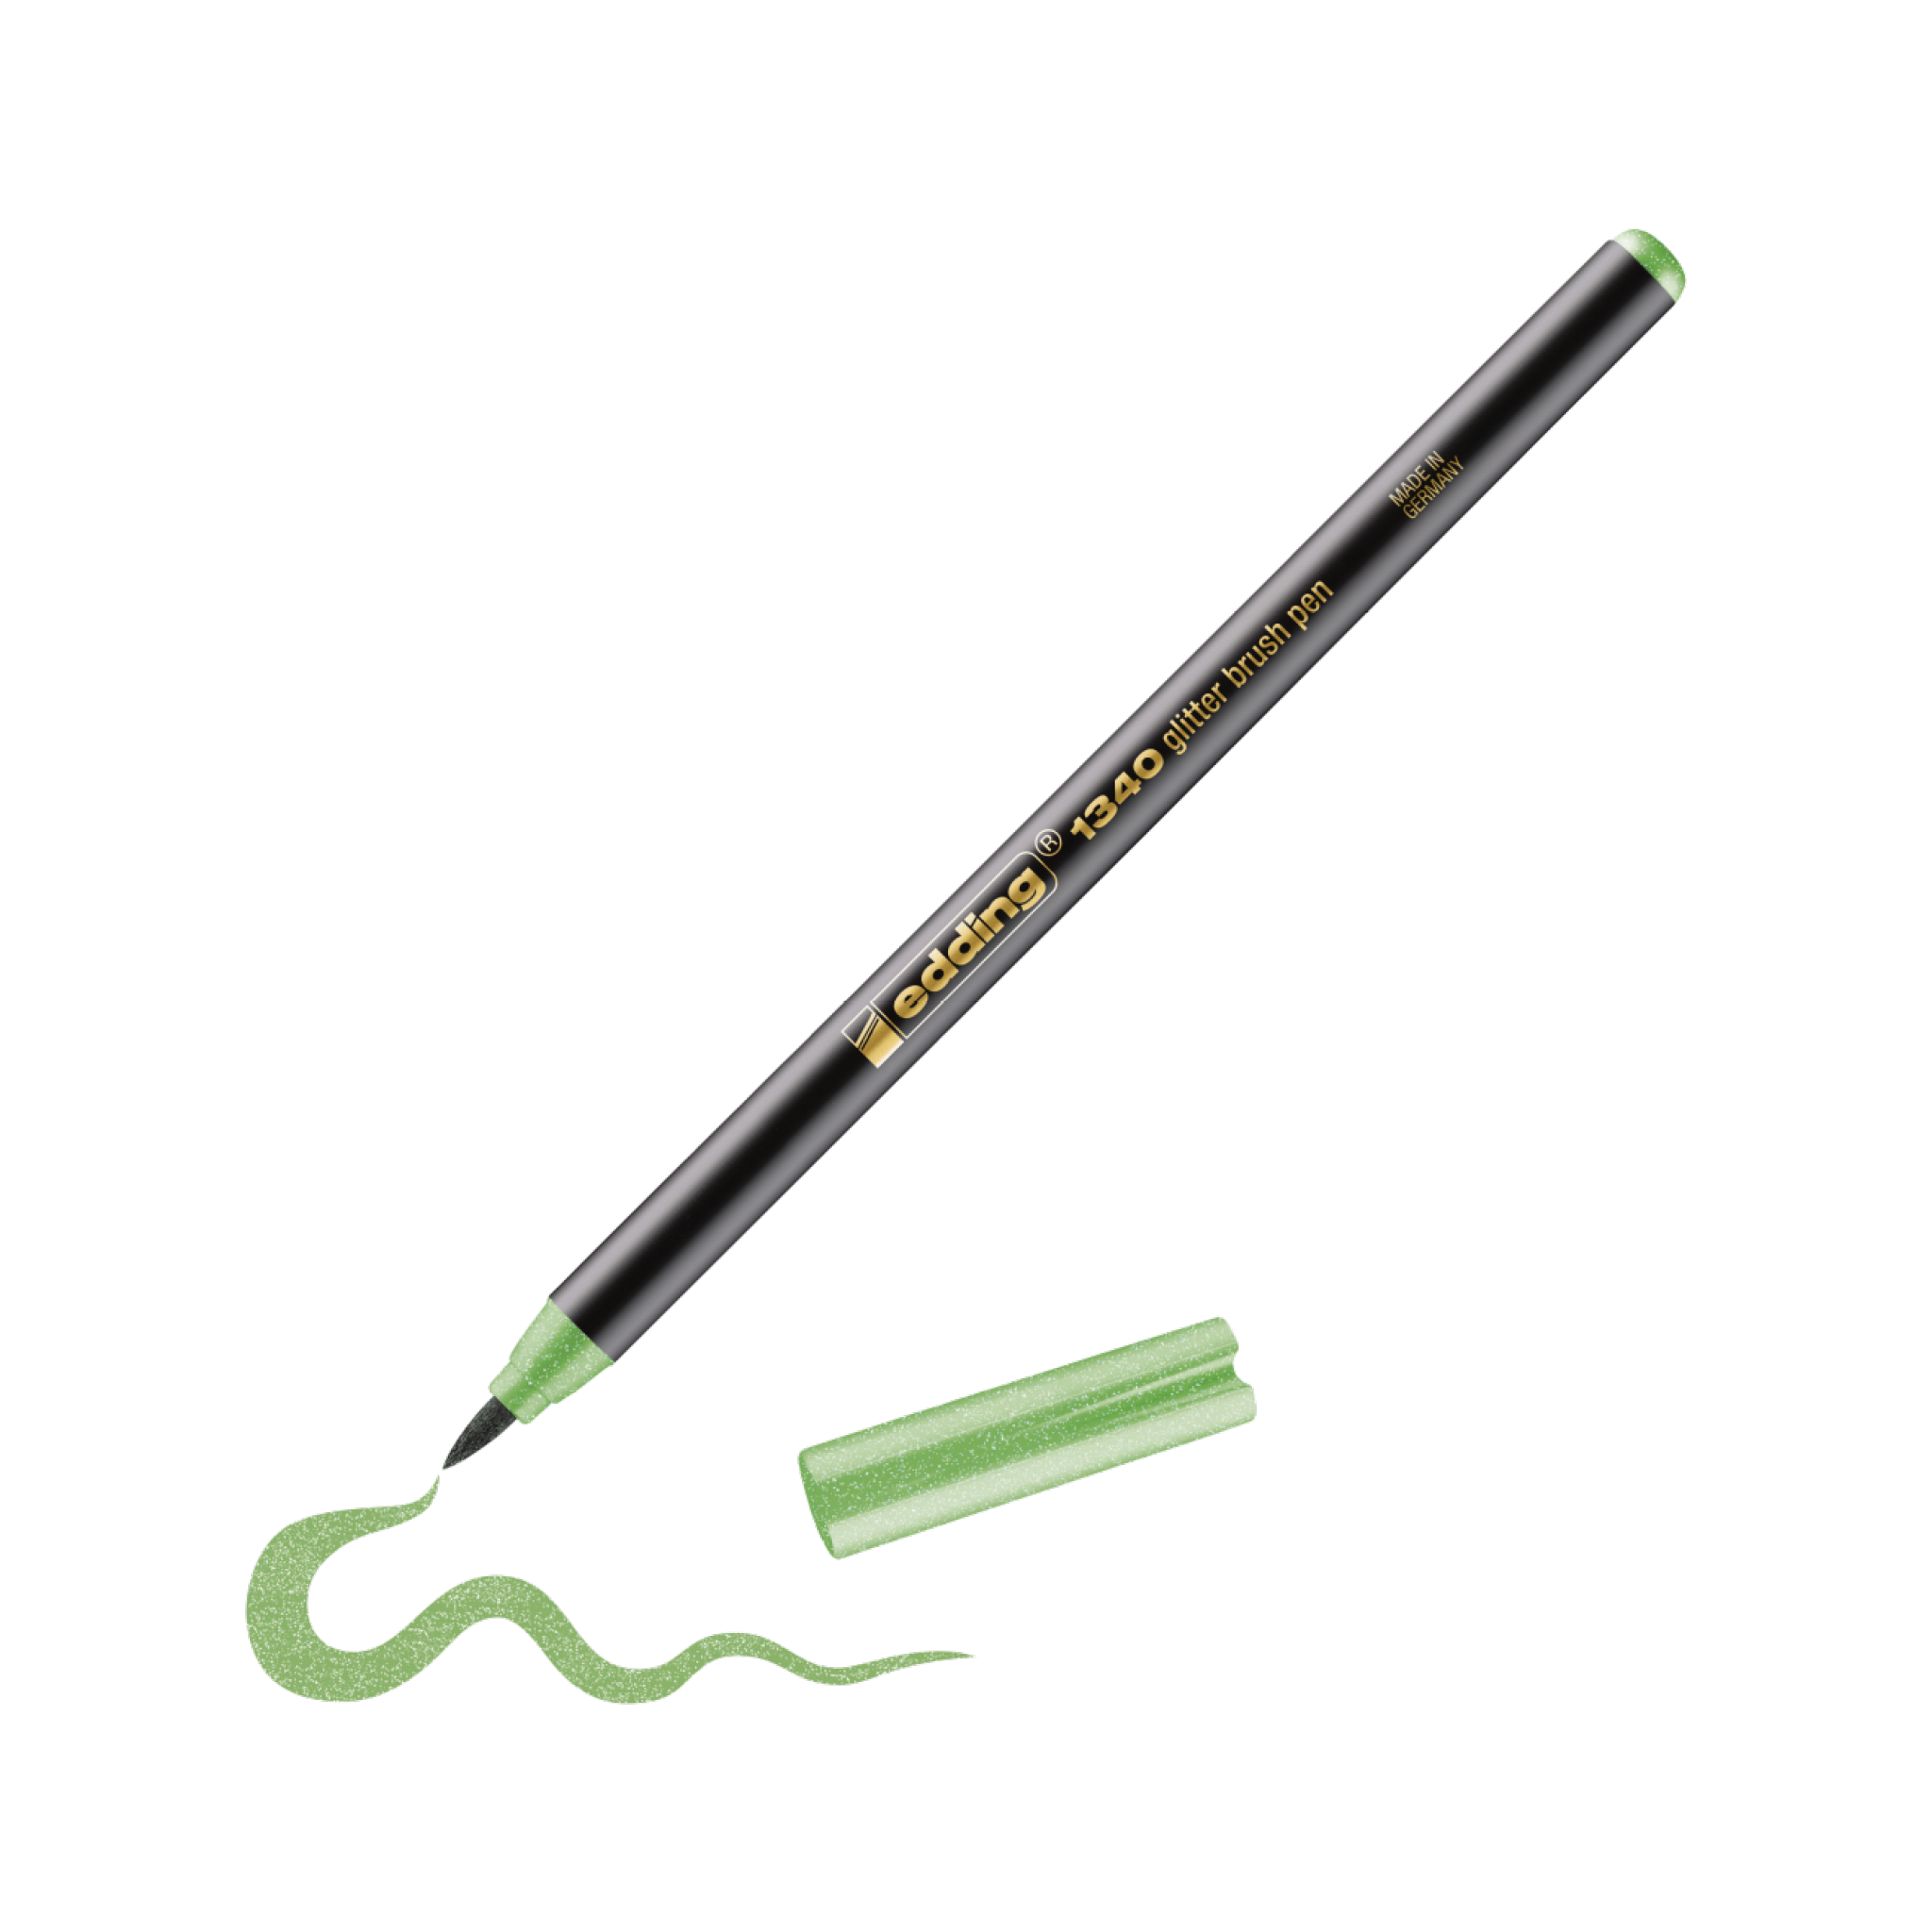 Ein grün-metallicfarbener Edding-Gelstift mit feiner Spitze, diagonal positioniert, der eine verschnörkelte Linie handschriftlich schreibt. Daneben befindet sich die Kappe des Stifts. Der Schaft des Stifts hat einen gelben Text.